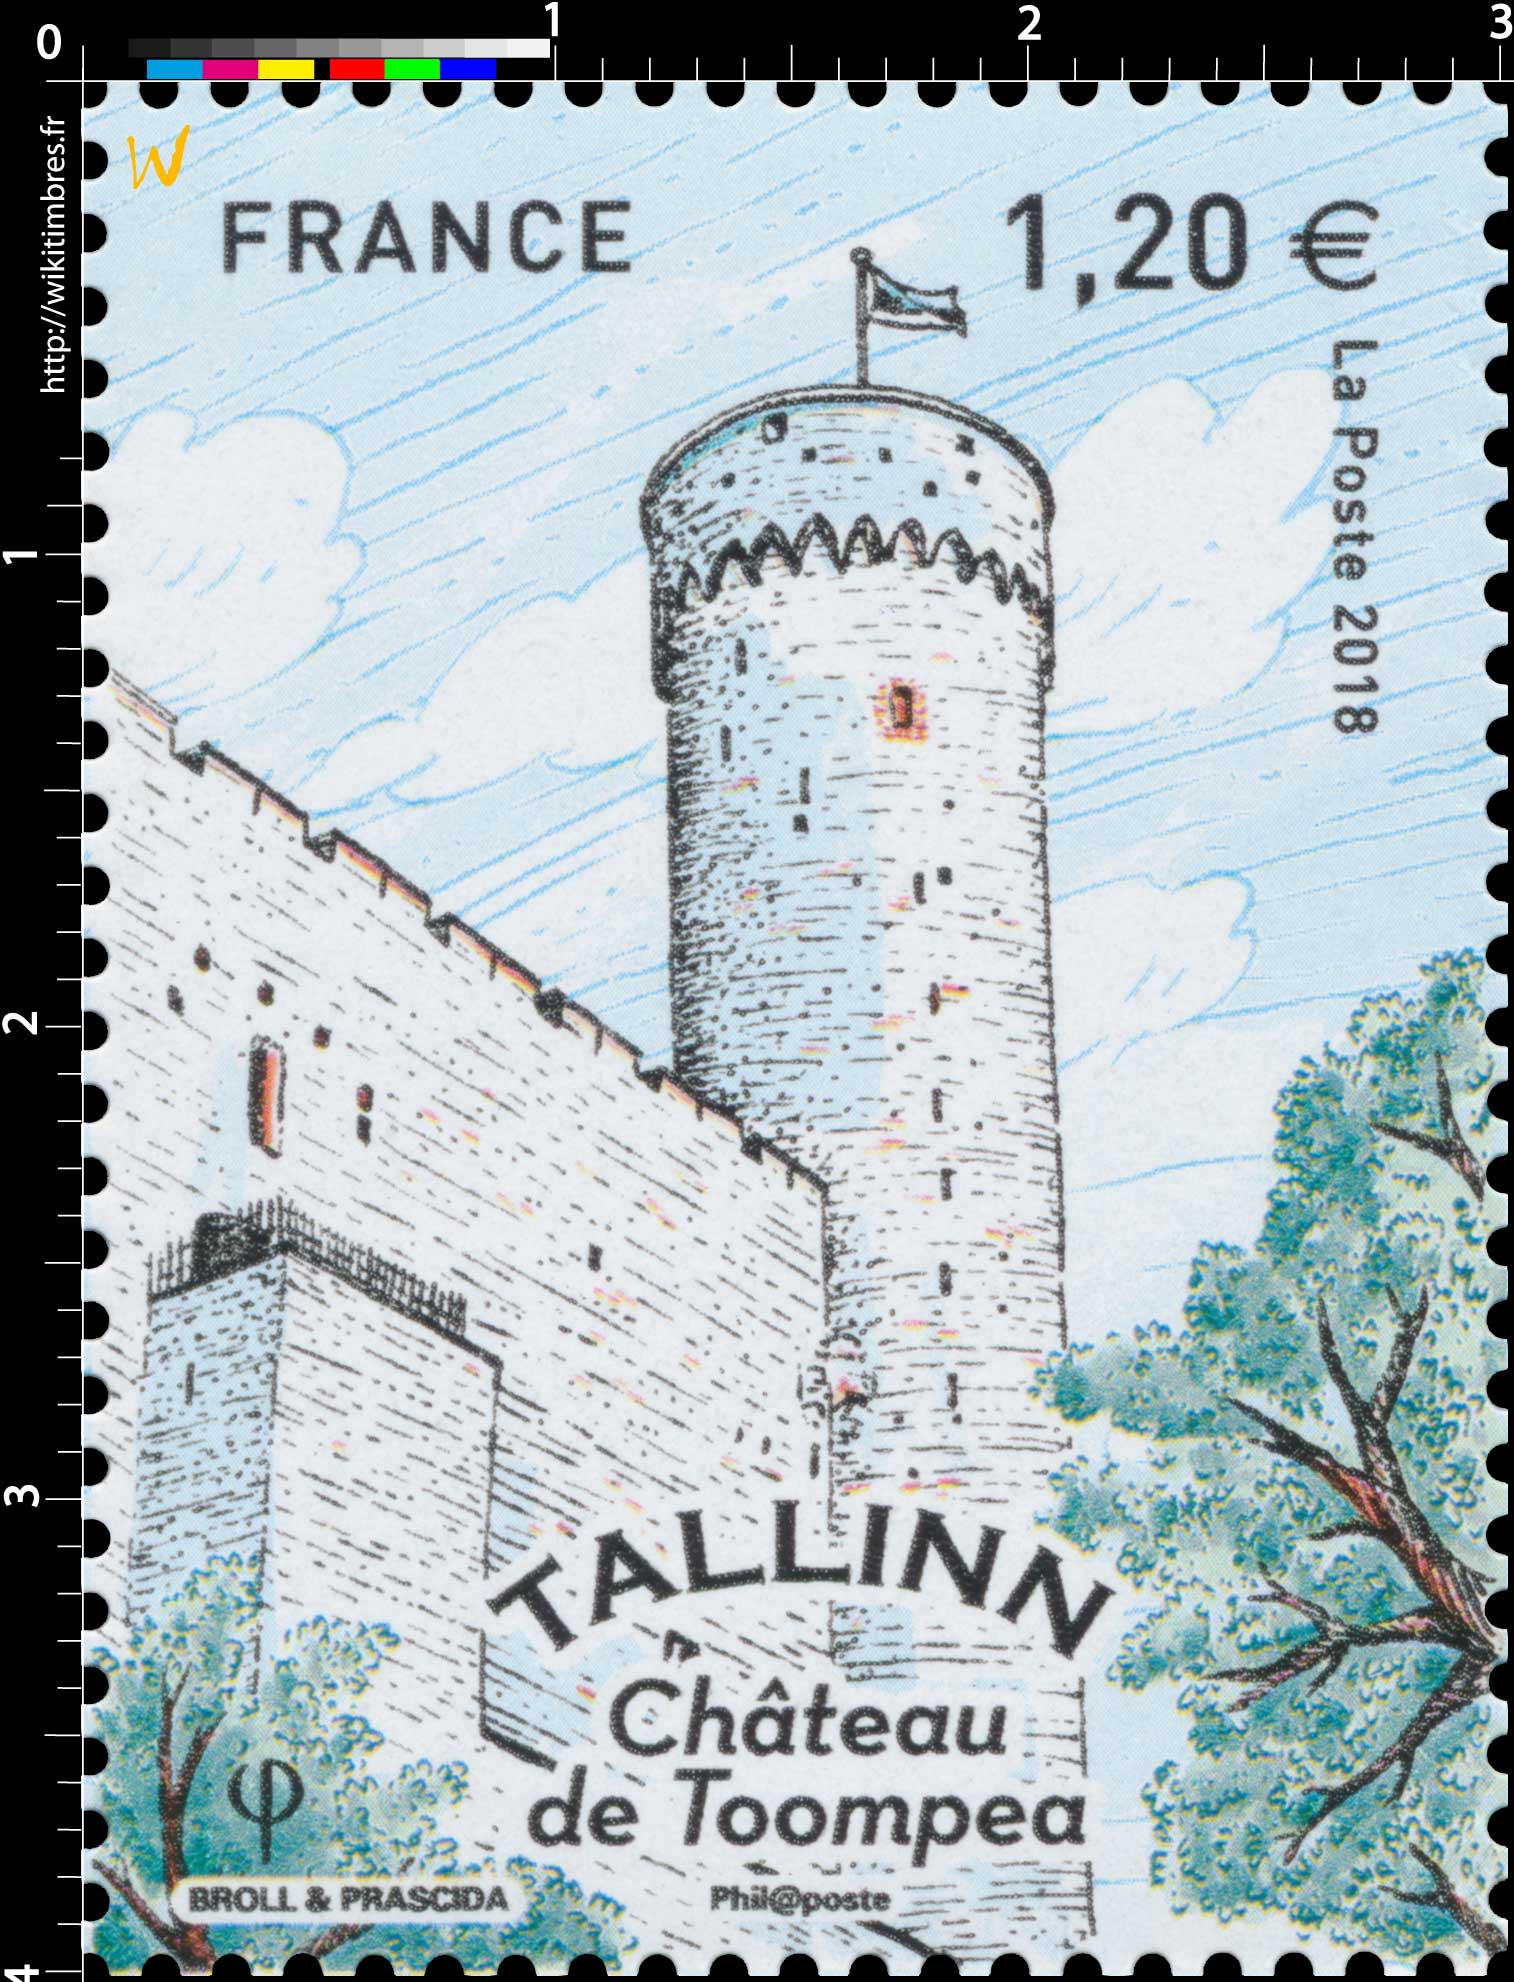 2018 TALLINN - Château de Toompea